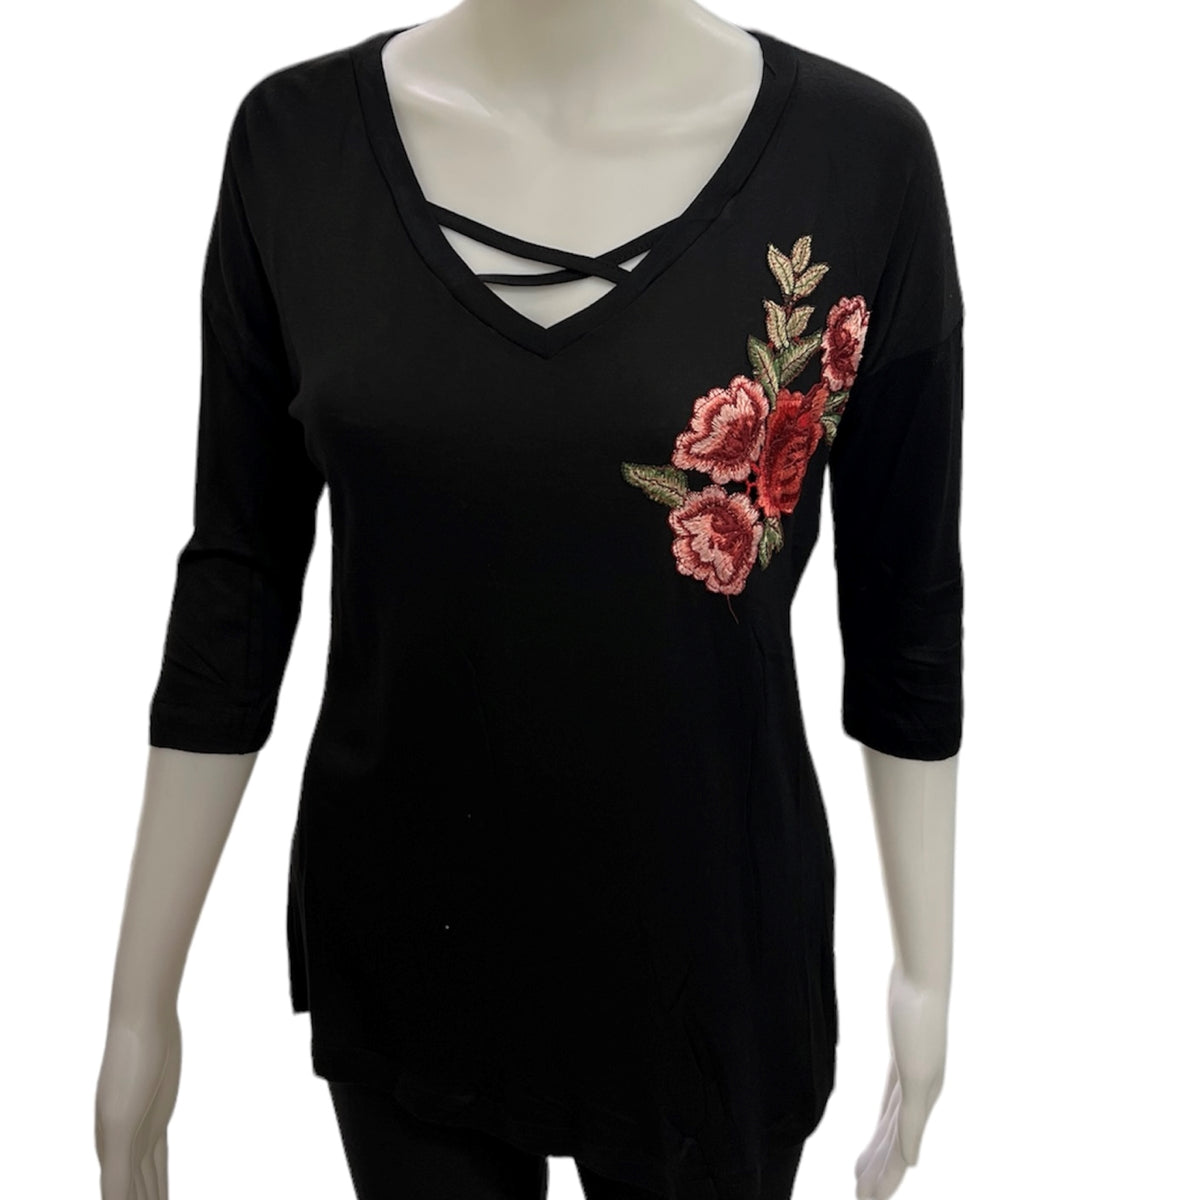 La blouse noire SO NICE avec fleurs est une pièce chic et intemporelle de la collection SoNice. Avec manche 3/4, elle est à la fois riche et confortable et représente le style de l'entreprise québécoise. Profitez d'un look impeccable et unique!